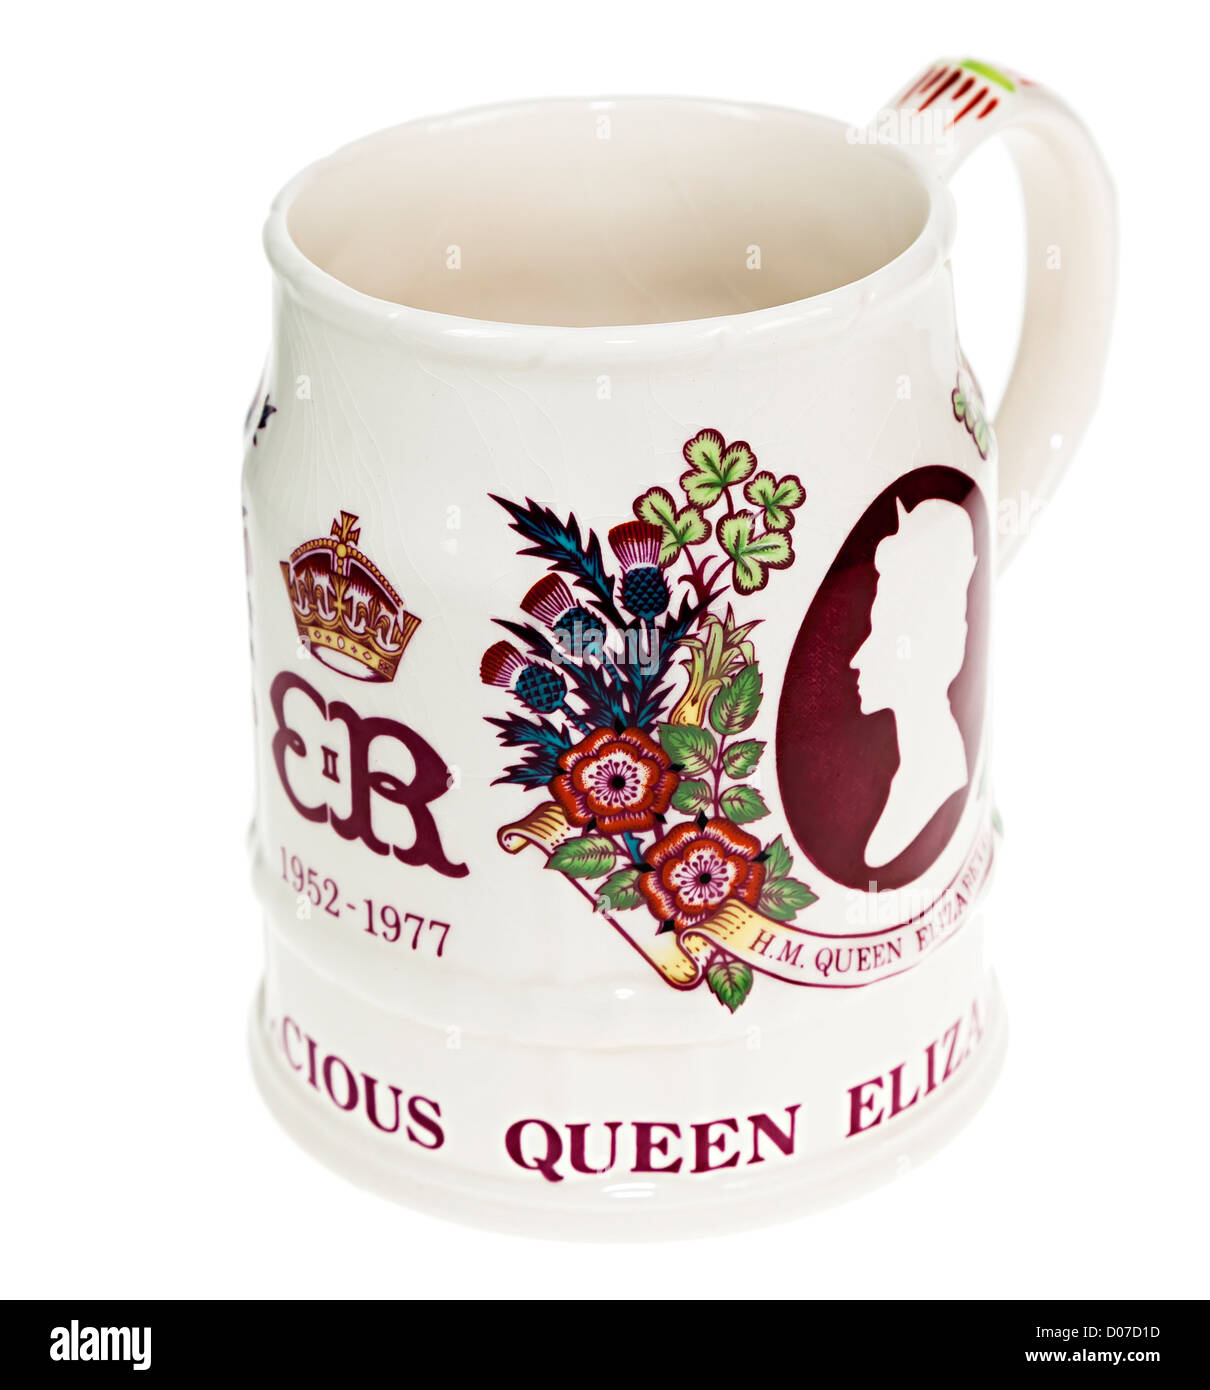 Queen Elizabeth II silver jubilee tazza commemorativa, England, Regno Unito Foto Stock